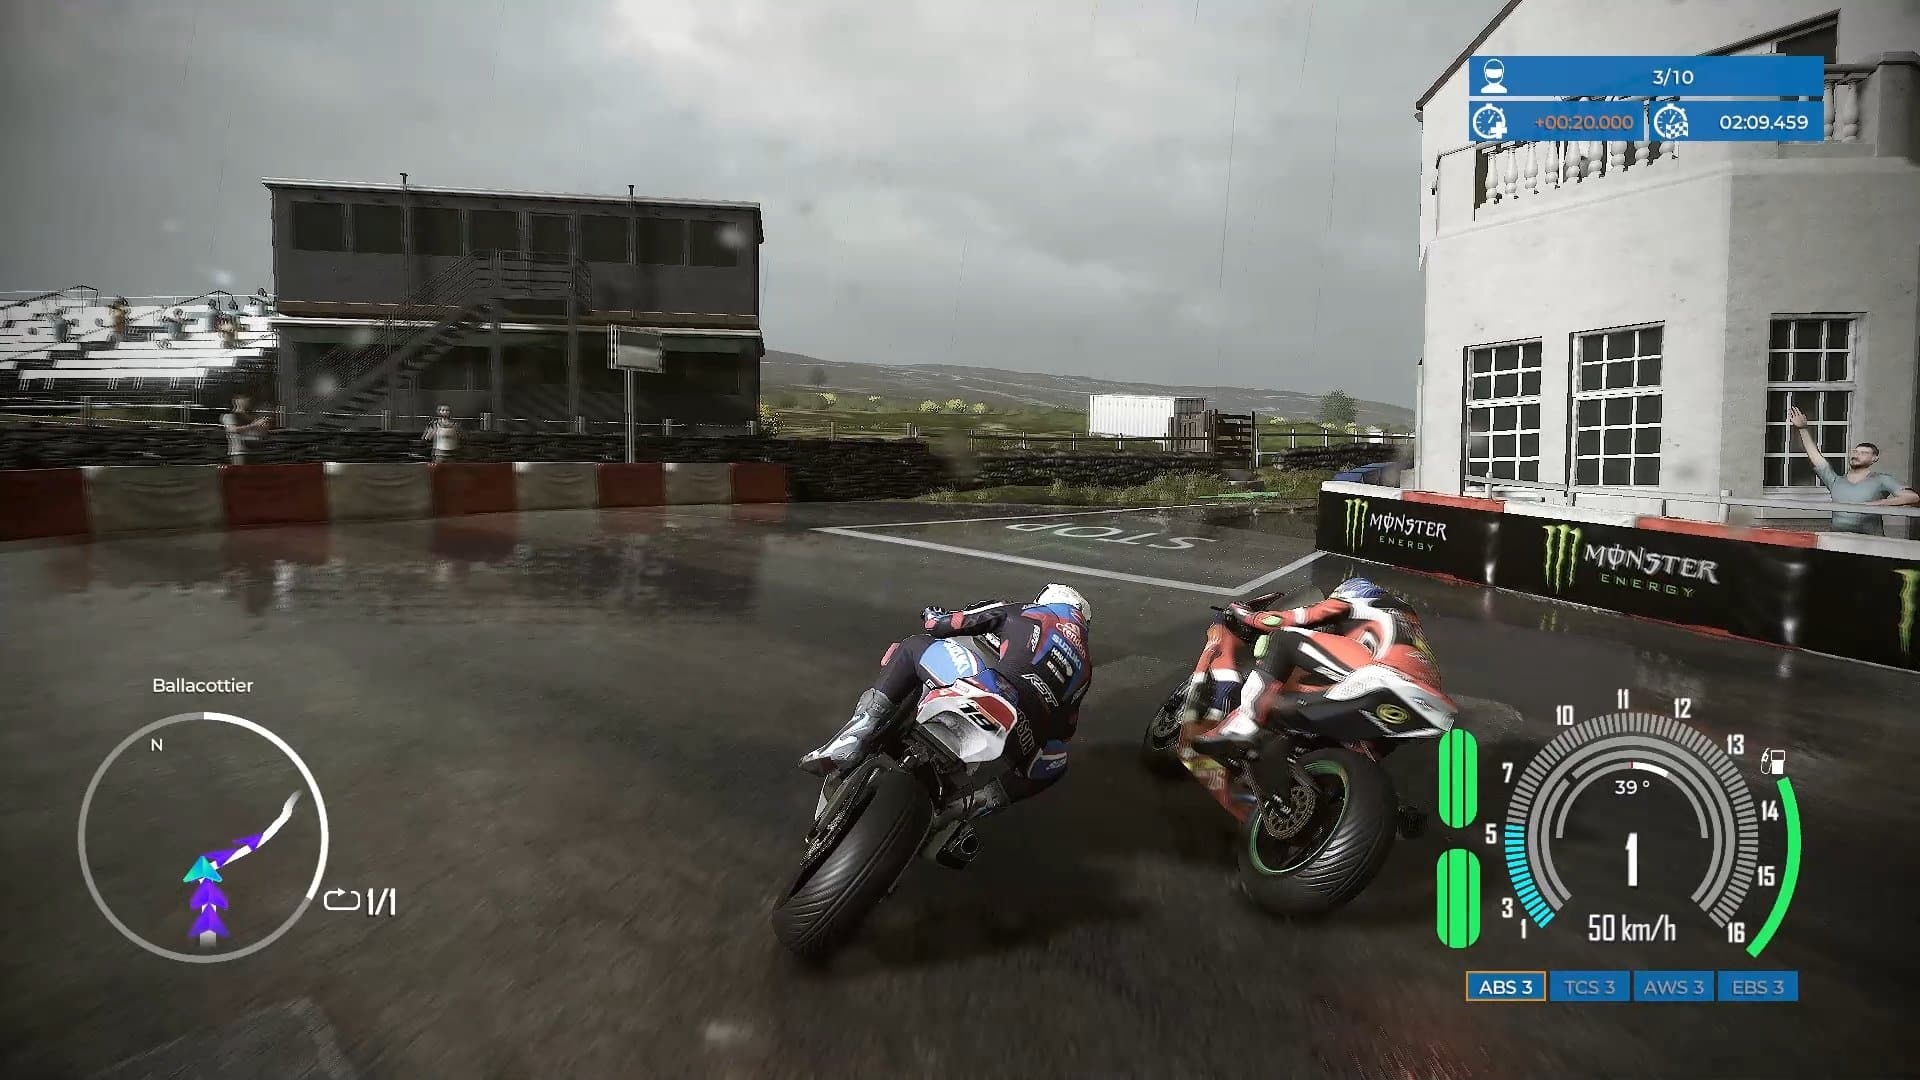 Game de motos TT Isle of Man será lançado em novembro